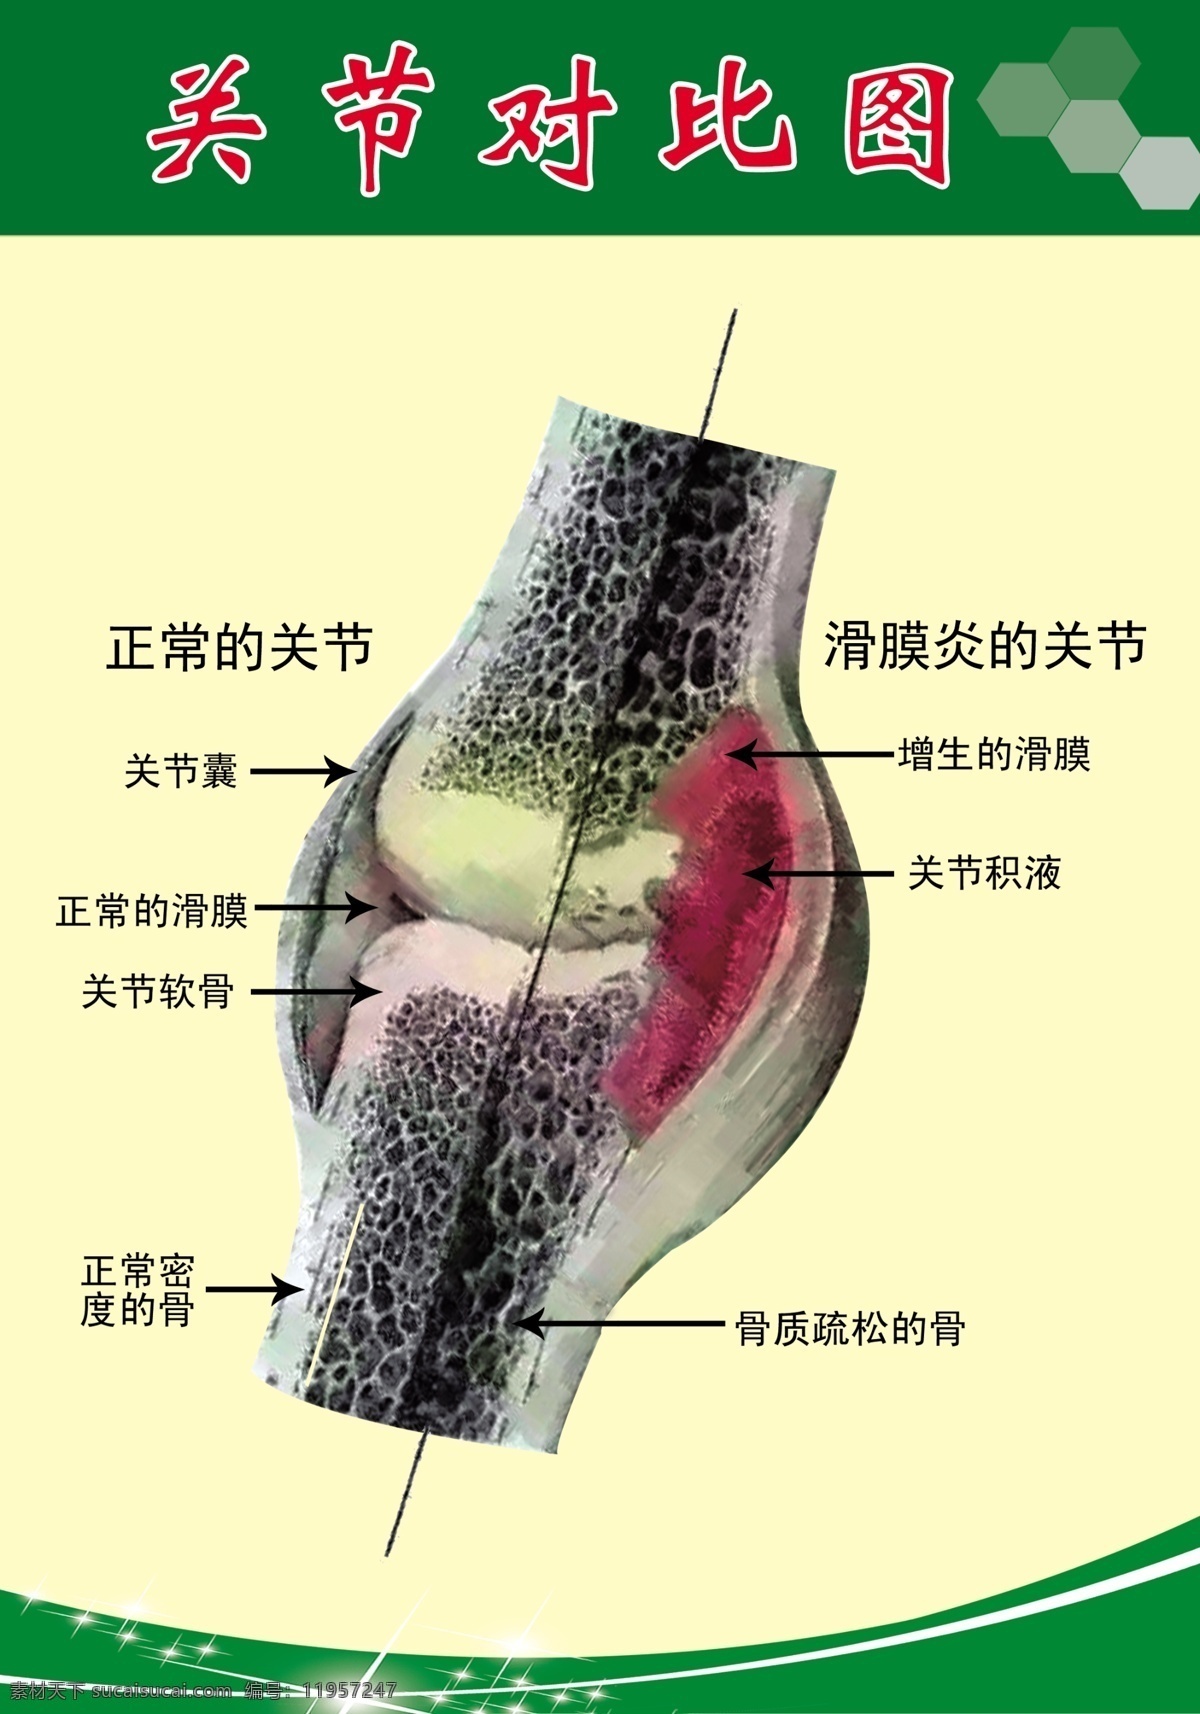 关节对比图 关节 对比图 滑膜炎 骨质对比 膝关节 分层